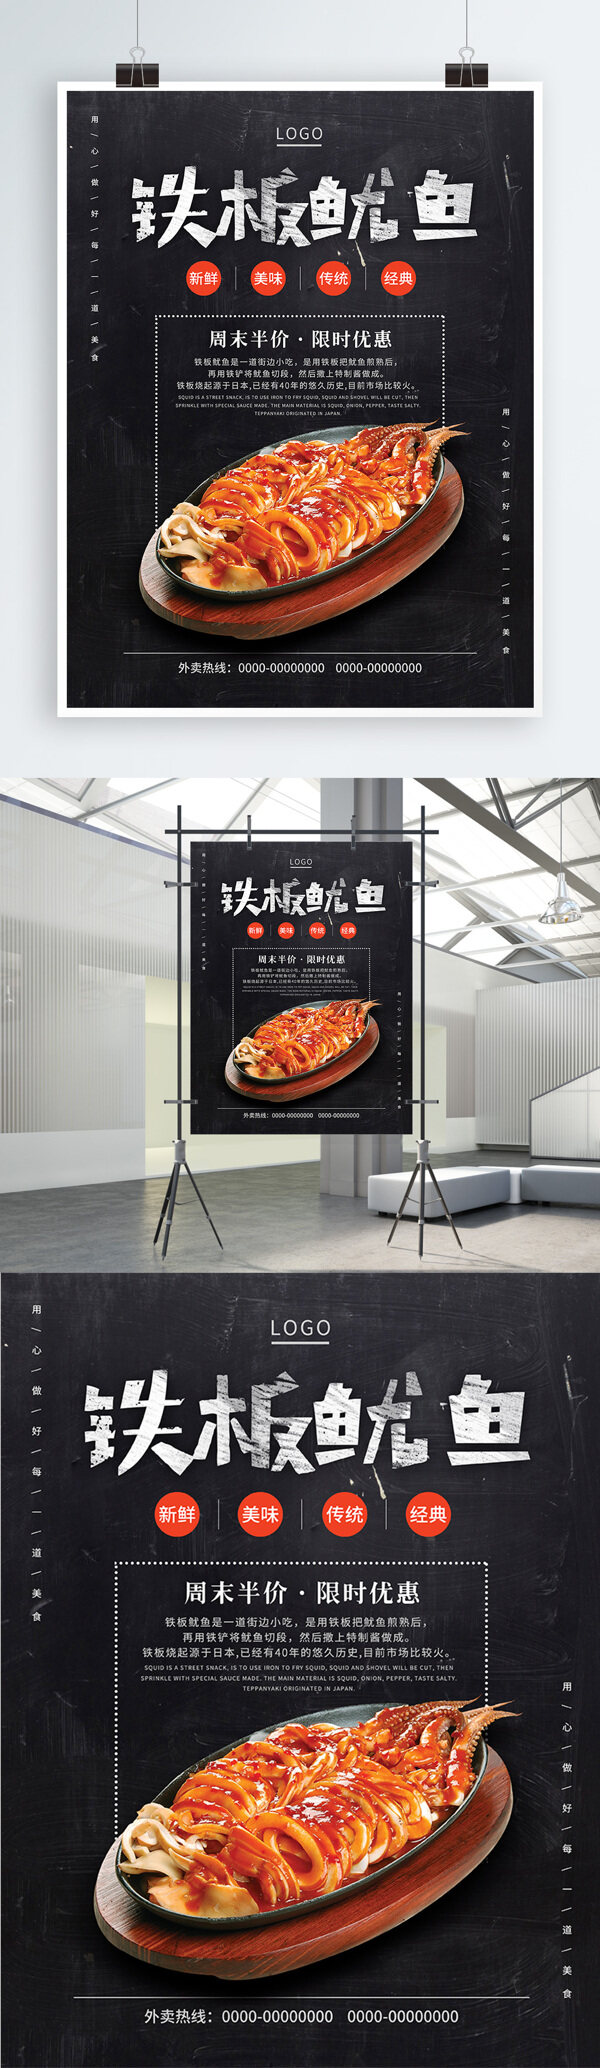 黑色黑板字小吃店路边摊排挡烧烤店宣传促销铁板鱿鱼美食海报